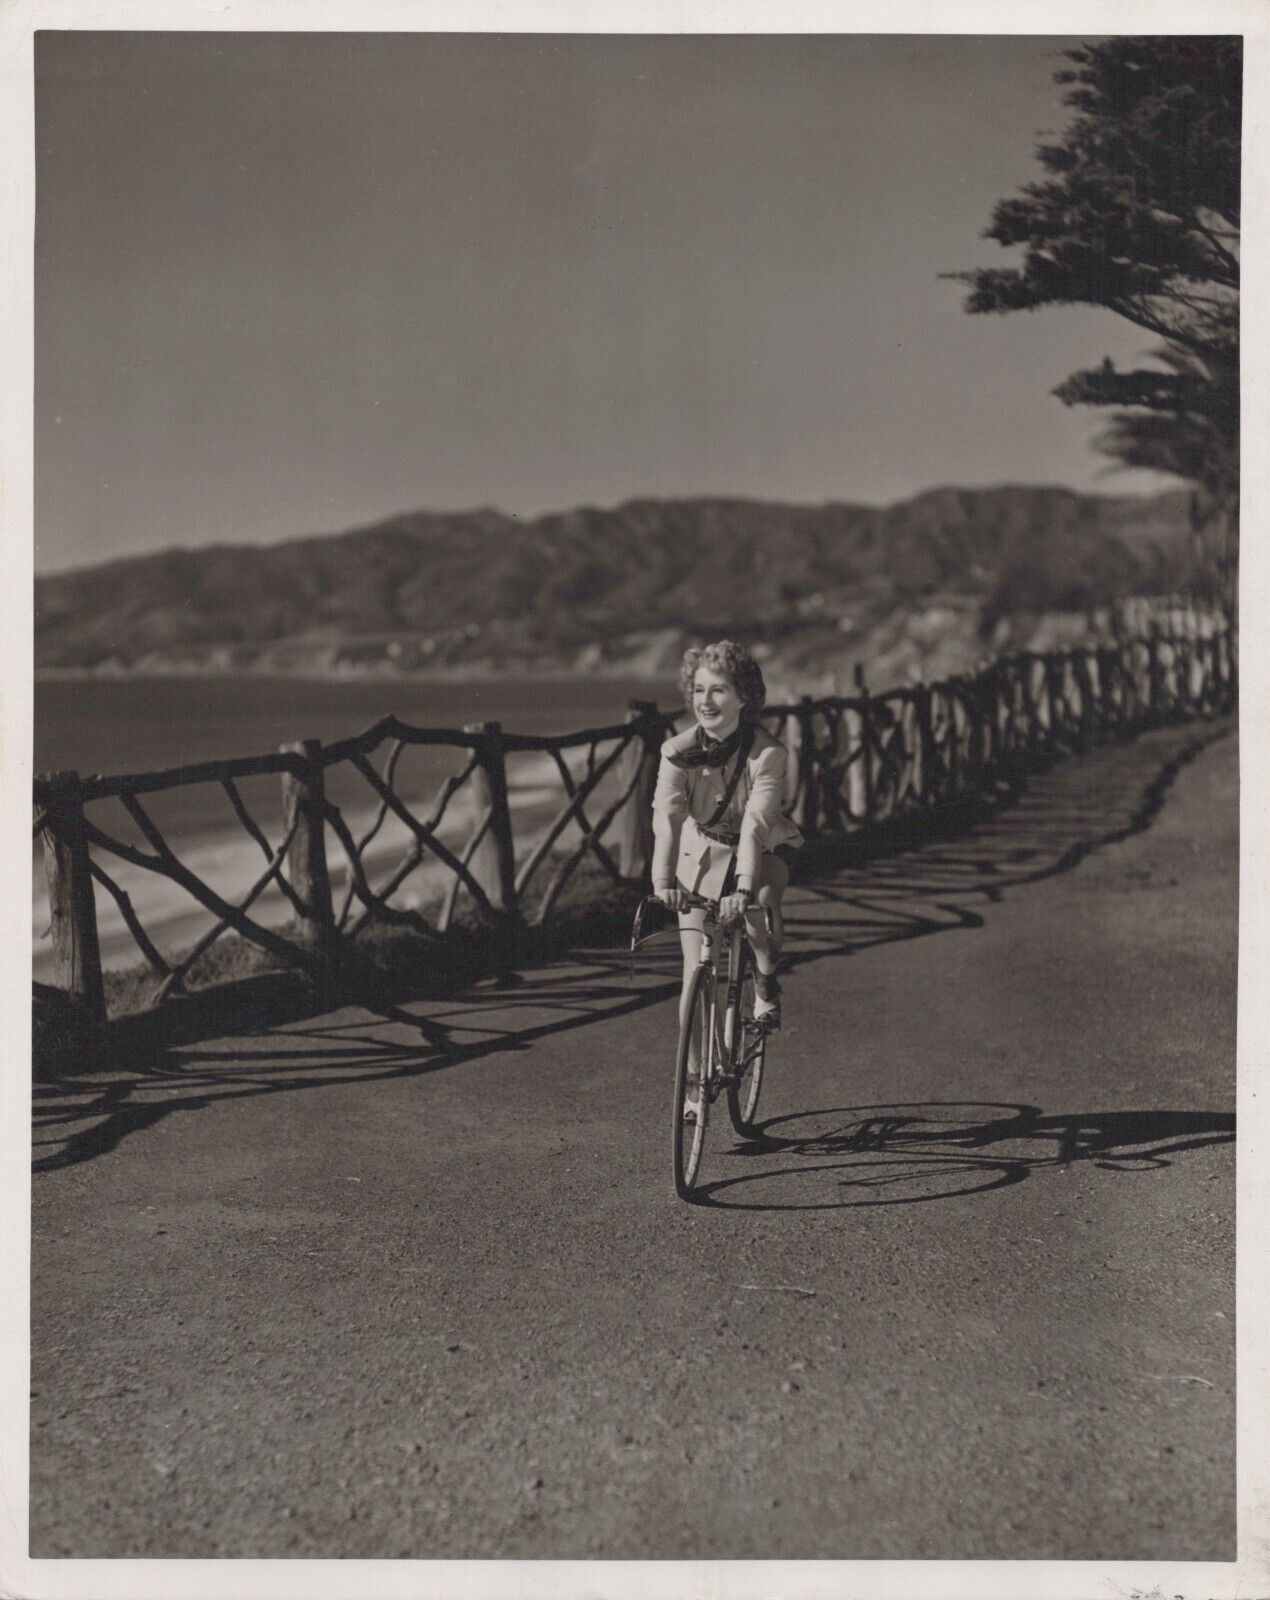 HOLLYWOOD BEAUTY NORMA SHEARER STYLISH POSE DBW PORTRAIT 1943 ORIG Photo C33